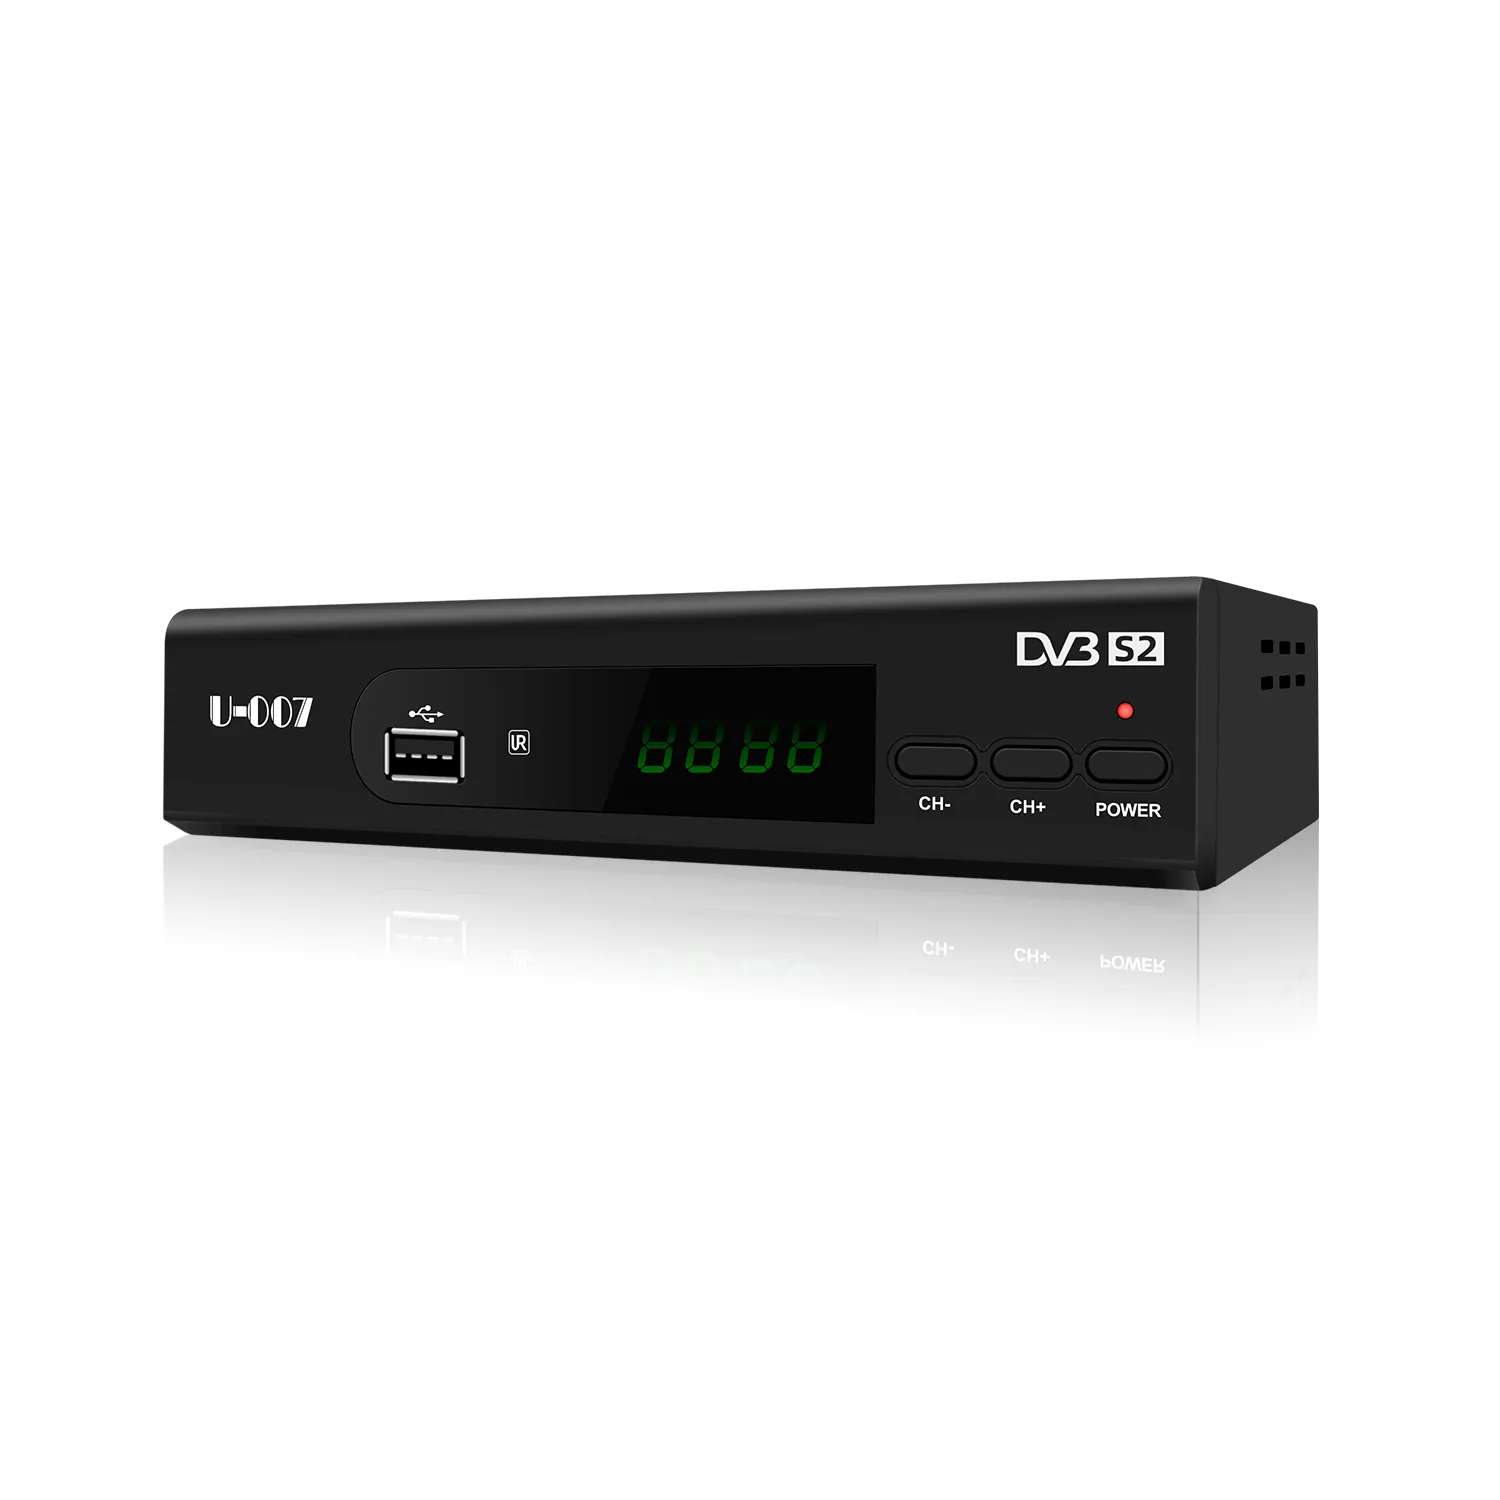 Оптовые продажи Junuo U-007 модель HD 1080p Wi-Fi IP ТВ спутниковый ТВ приемник DVB-S2 TV BOX